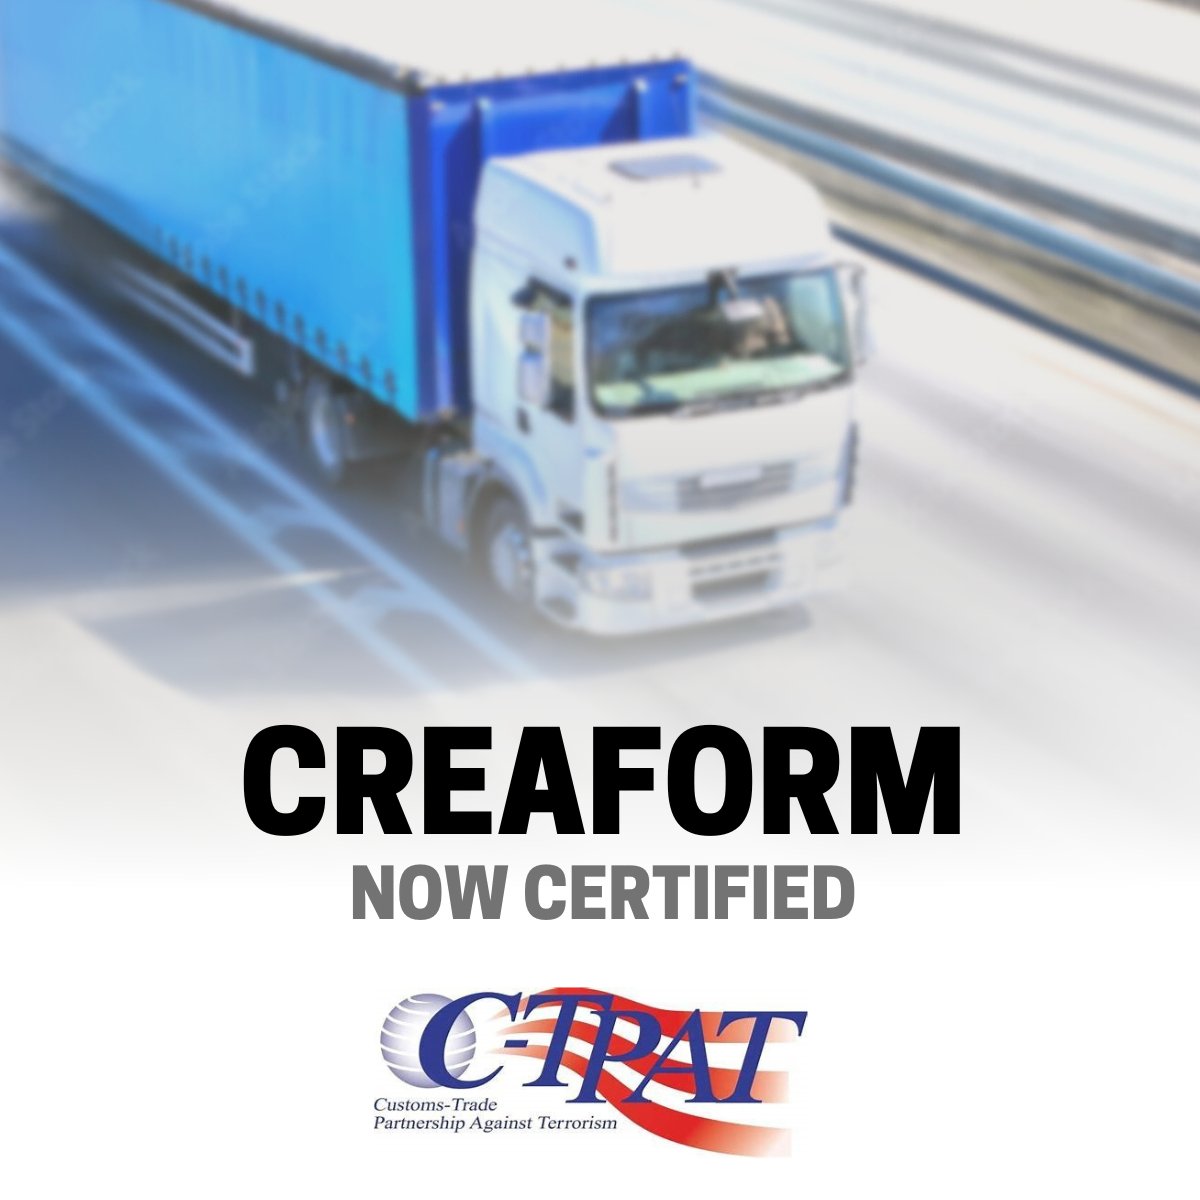 Creaform joins C-TPAT